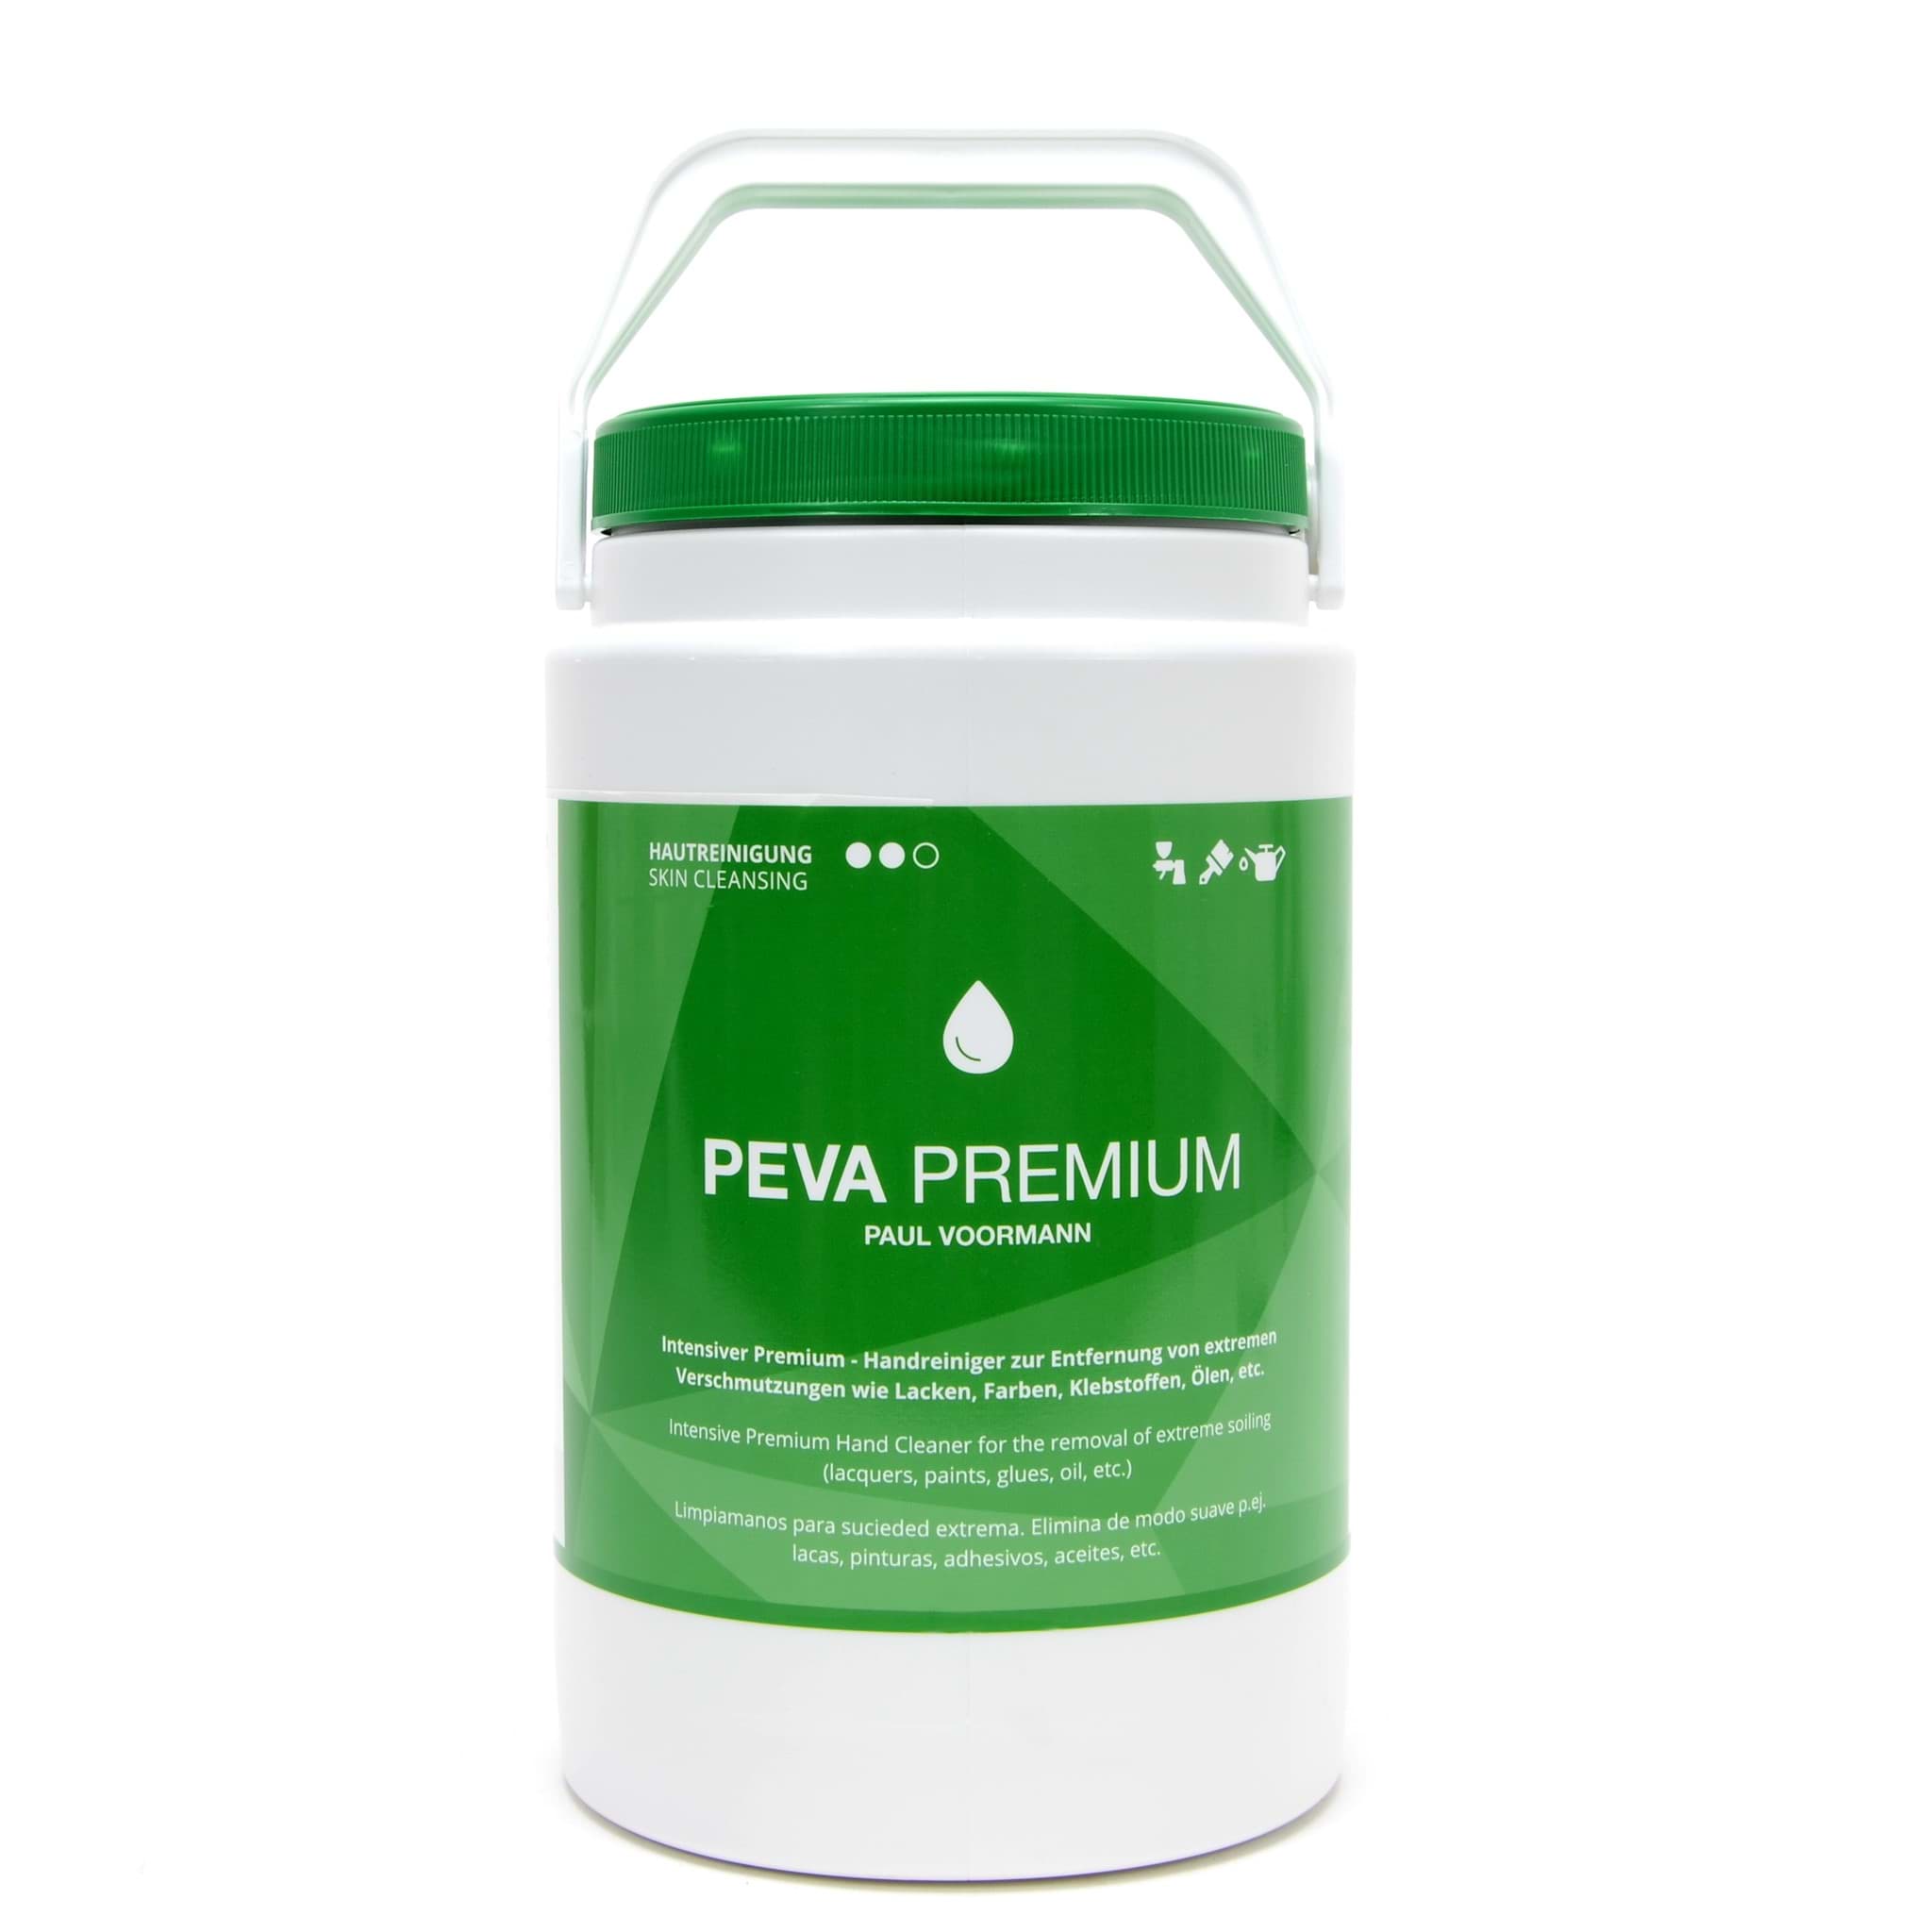 Picture of Peva Premium Handreiniger 3 Liter